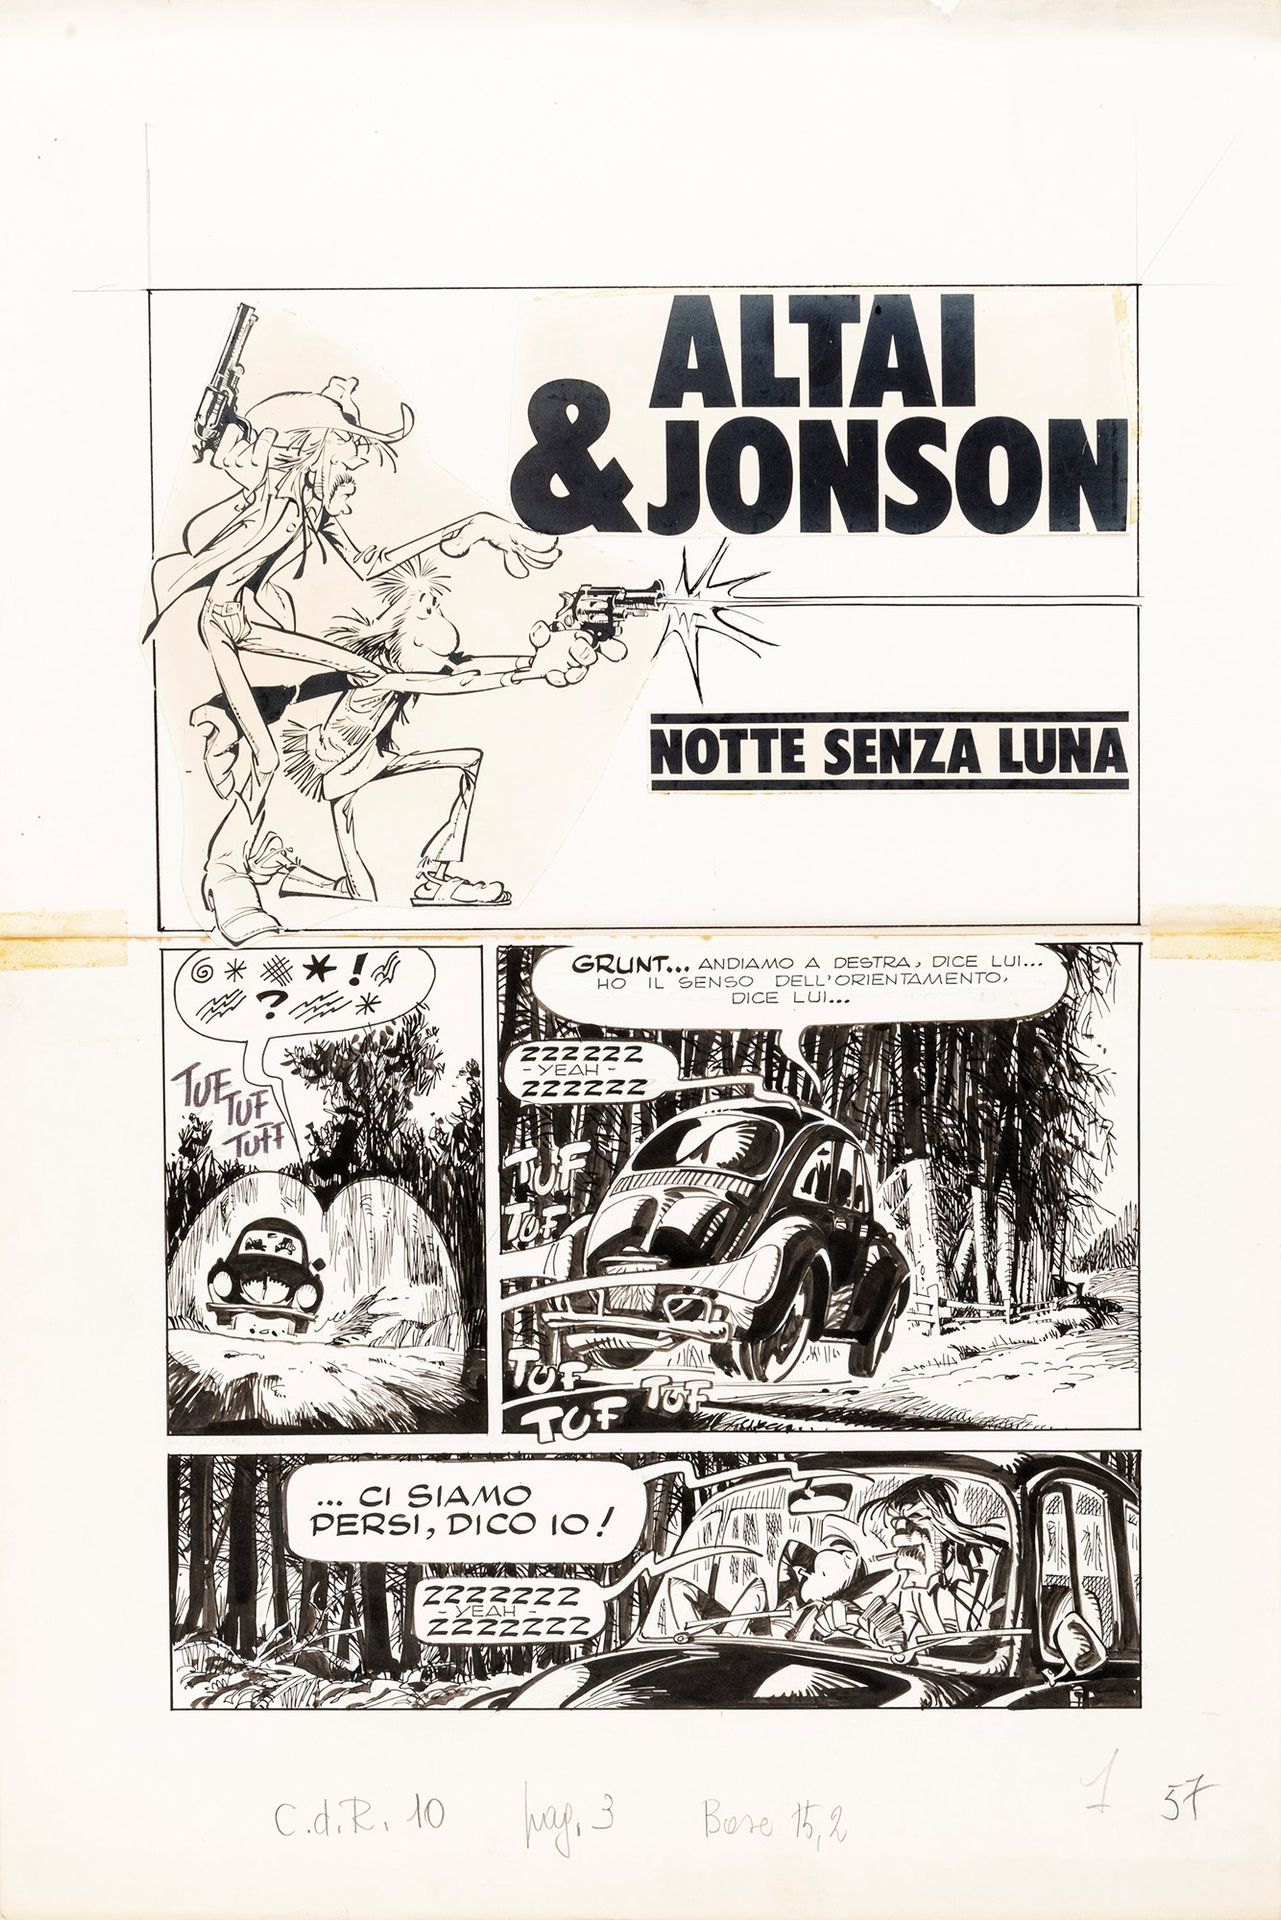 Giorgio Cavazzano Altai & Jonson - Notte senza luna, 1976

matita e inchiostro s&hellip;